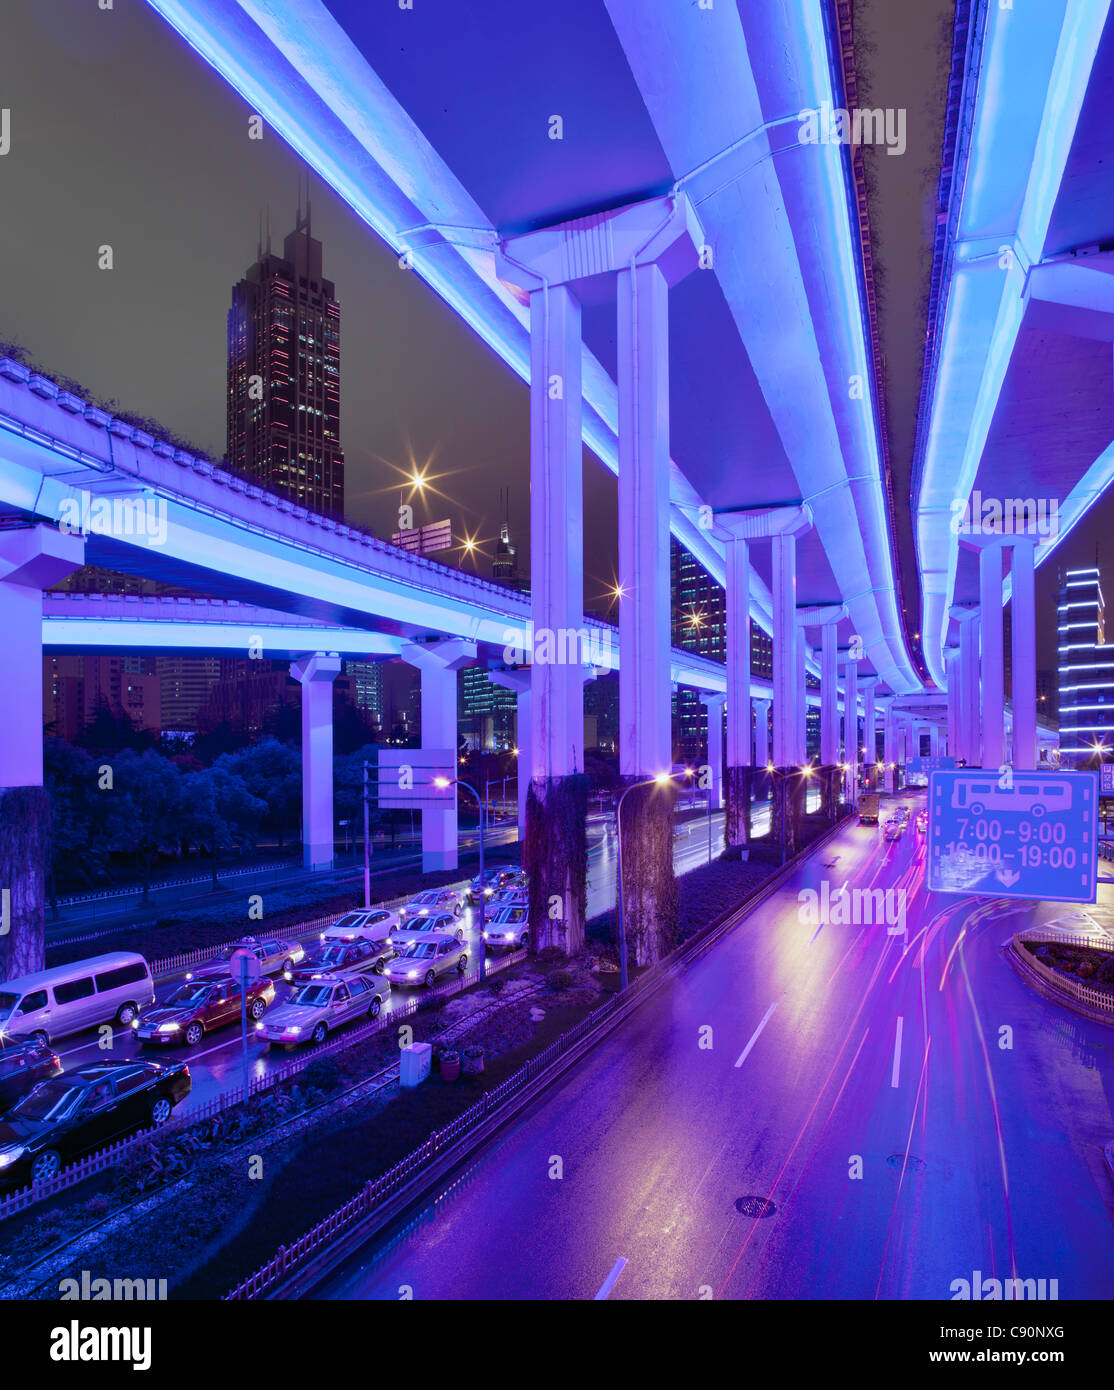 Luban Road Motorway Interchange at night, Luwan, Shanghai, China Stock Photo